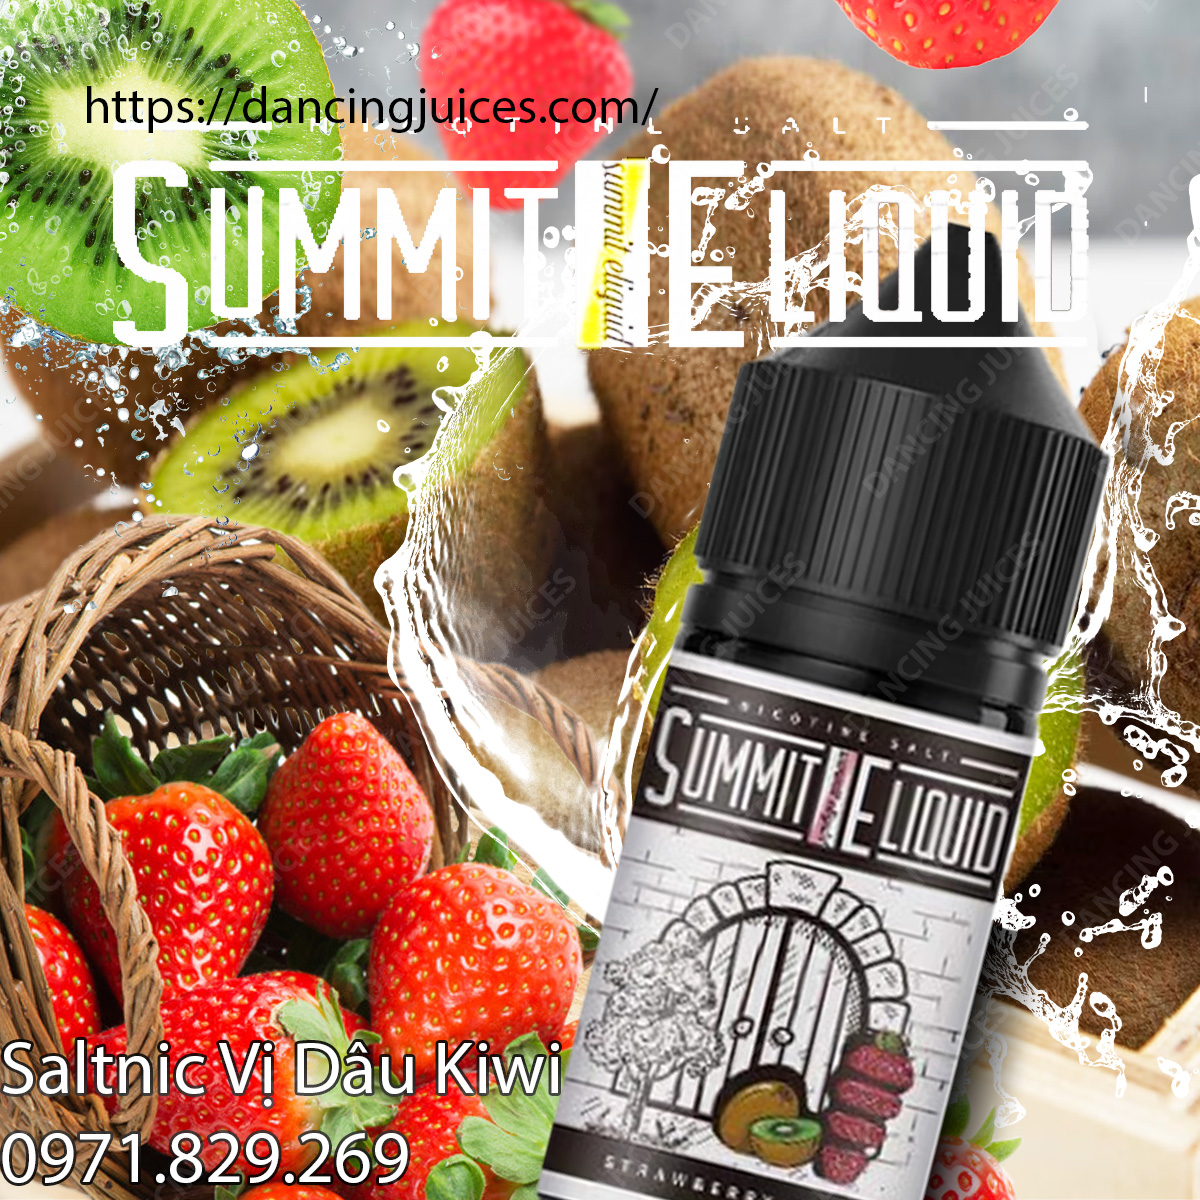 SALTNIC SUMMIT Strawberry Kiwi 30ml - Tinh Dau Saltnic Chinh Hang Phone: 0971.829.269